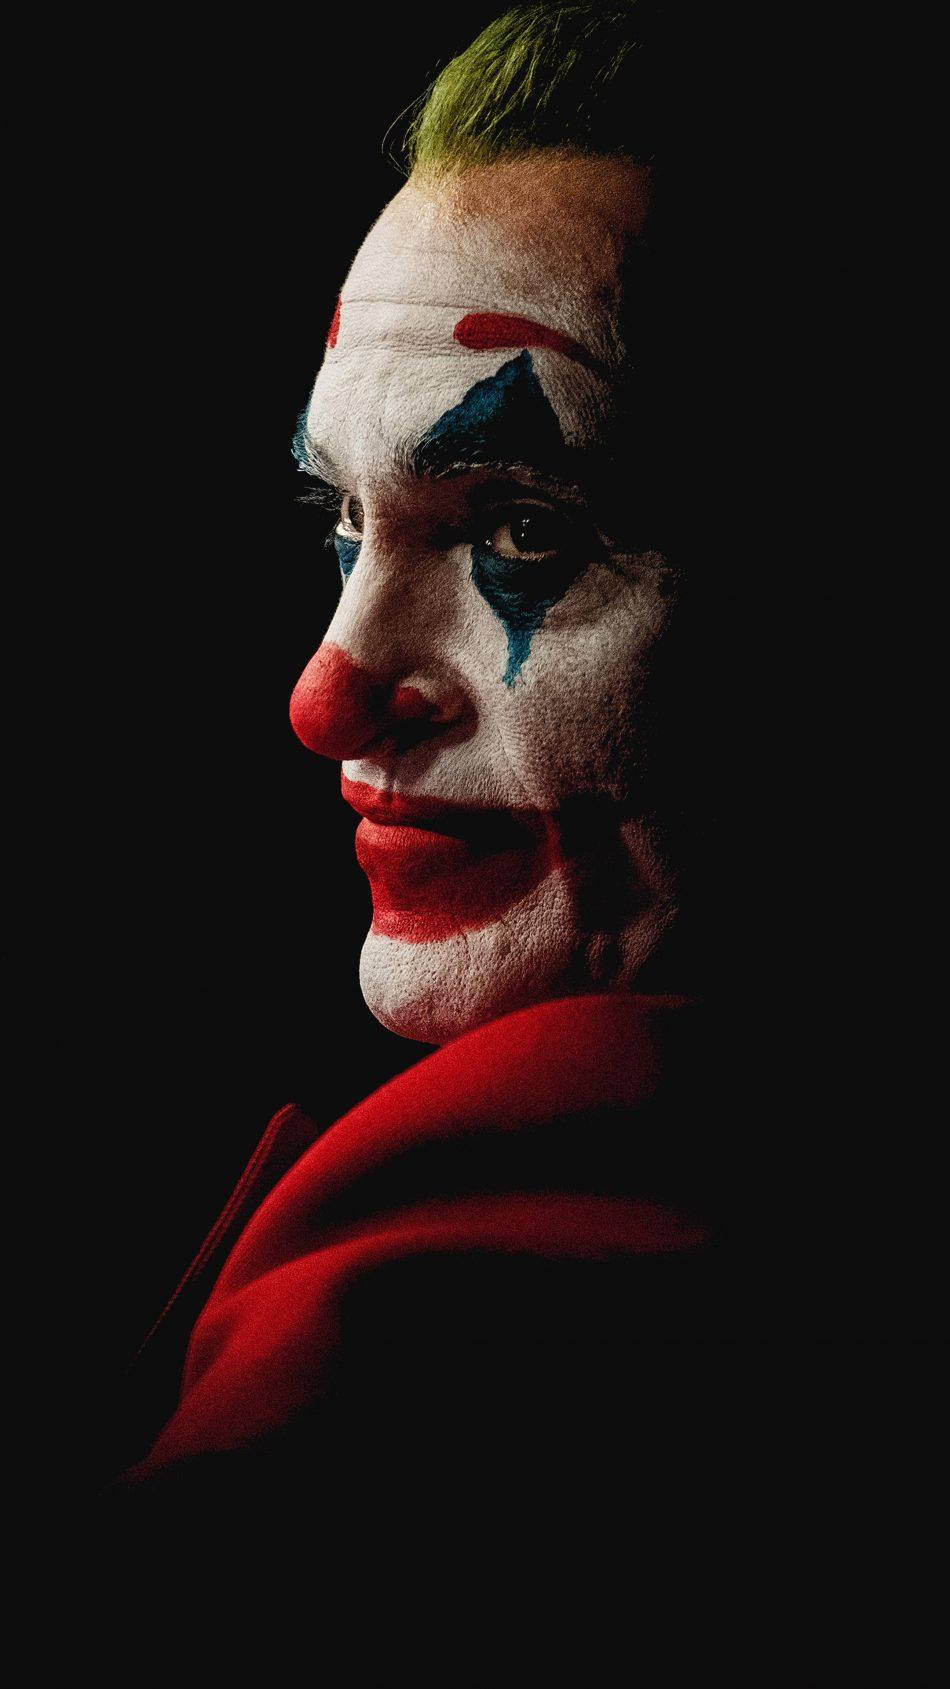 Joker Portrait 4k Ultra Hd Wallpaper